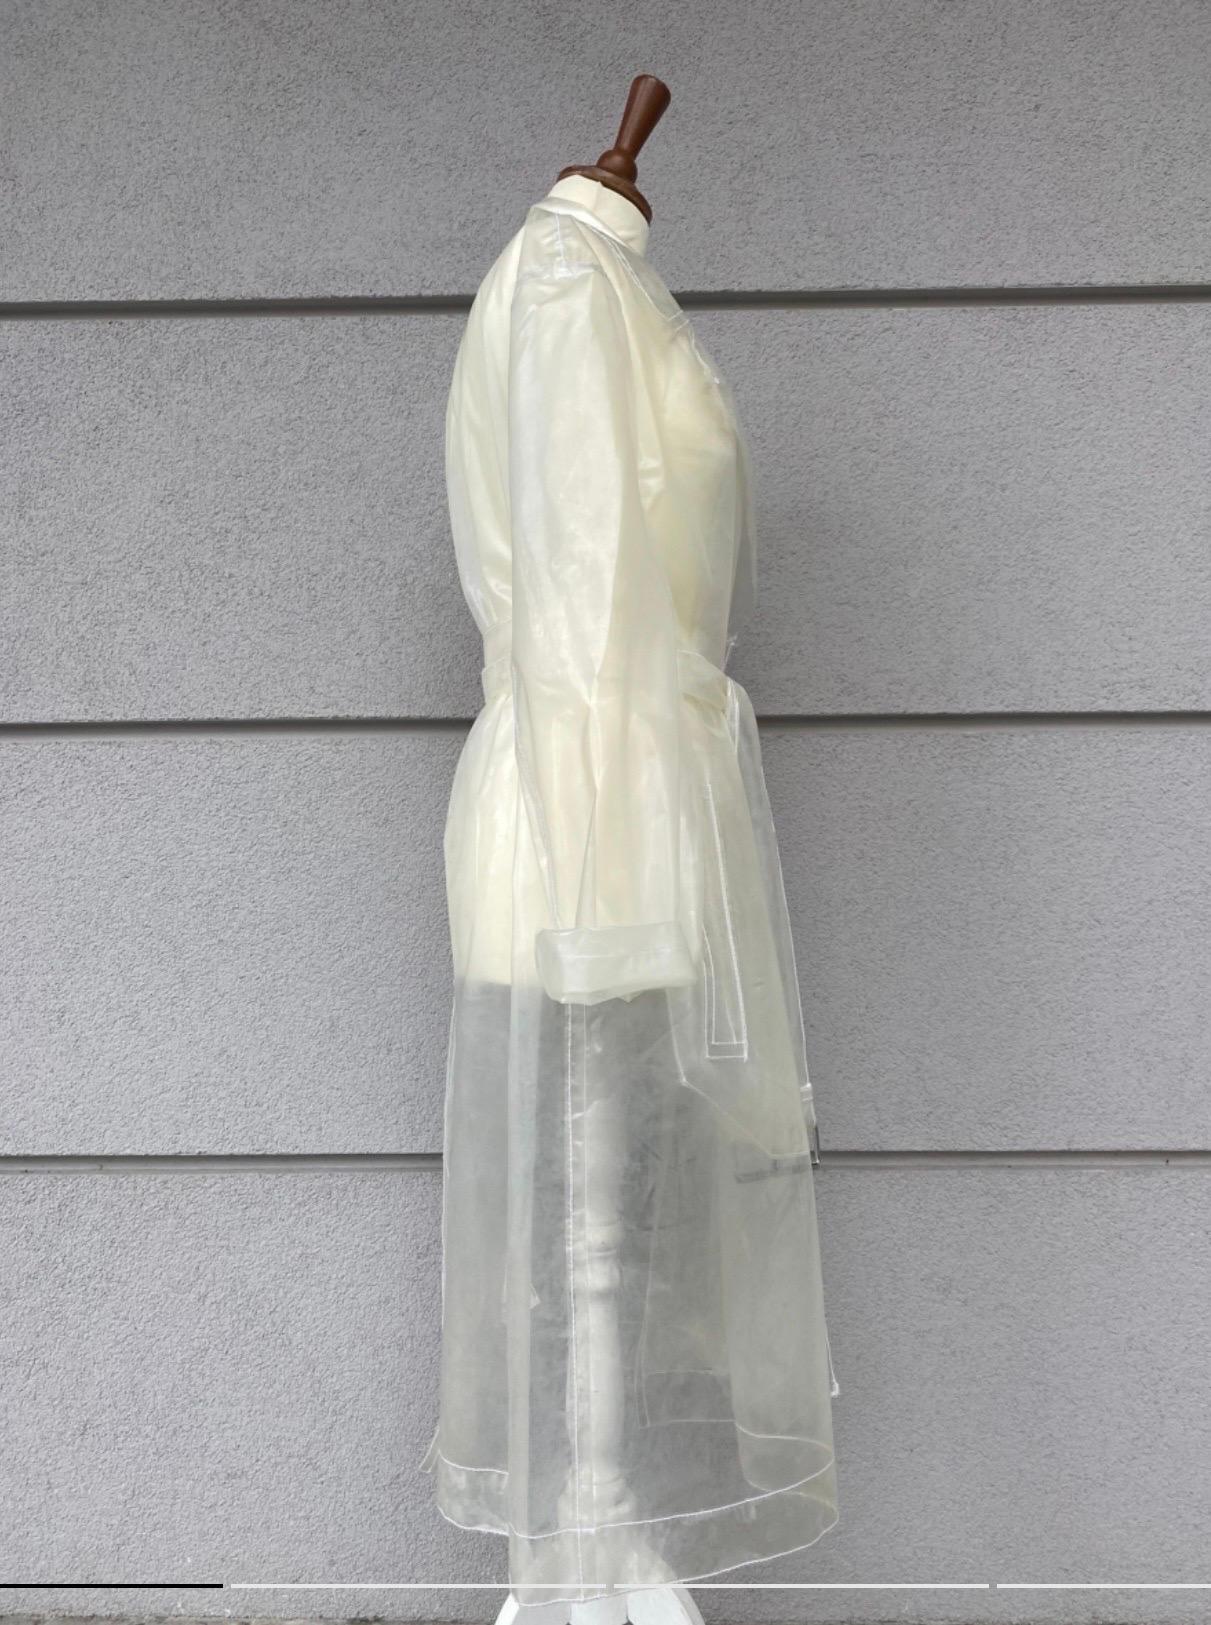 Maison Margiela MM6 Trenchcoat aus transparentem weißem Polyurethan, Größe 40, mit doppeltem Brustverschluss und Taillengürtel. Zwei Taschen auf der Vorderseite, Maße: Schulter 48 cm, Ärmel 60 cm, Brust 56 cm, Taille 60 cm, Länge 106 cm, in sehr